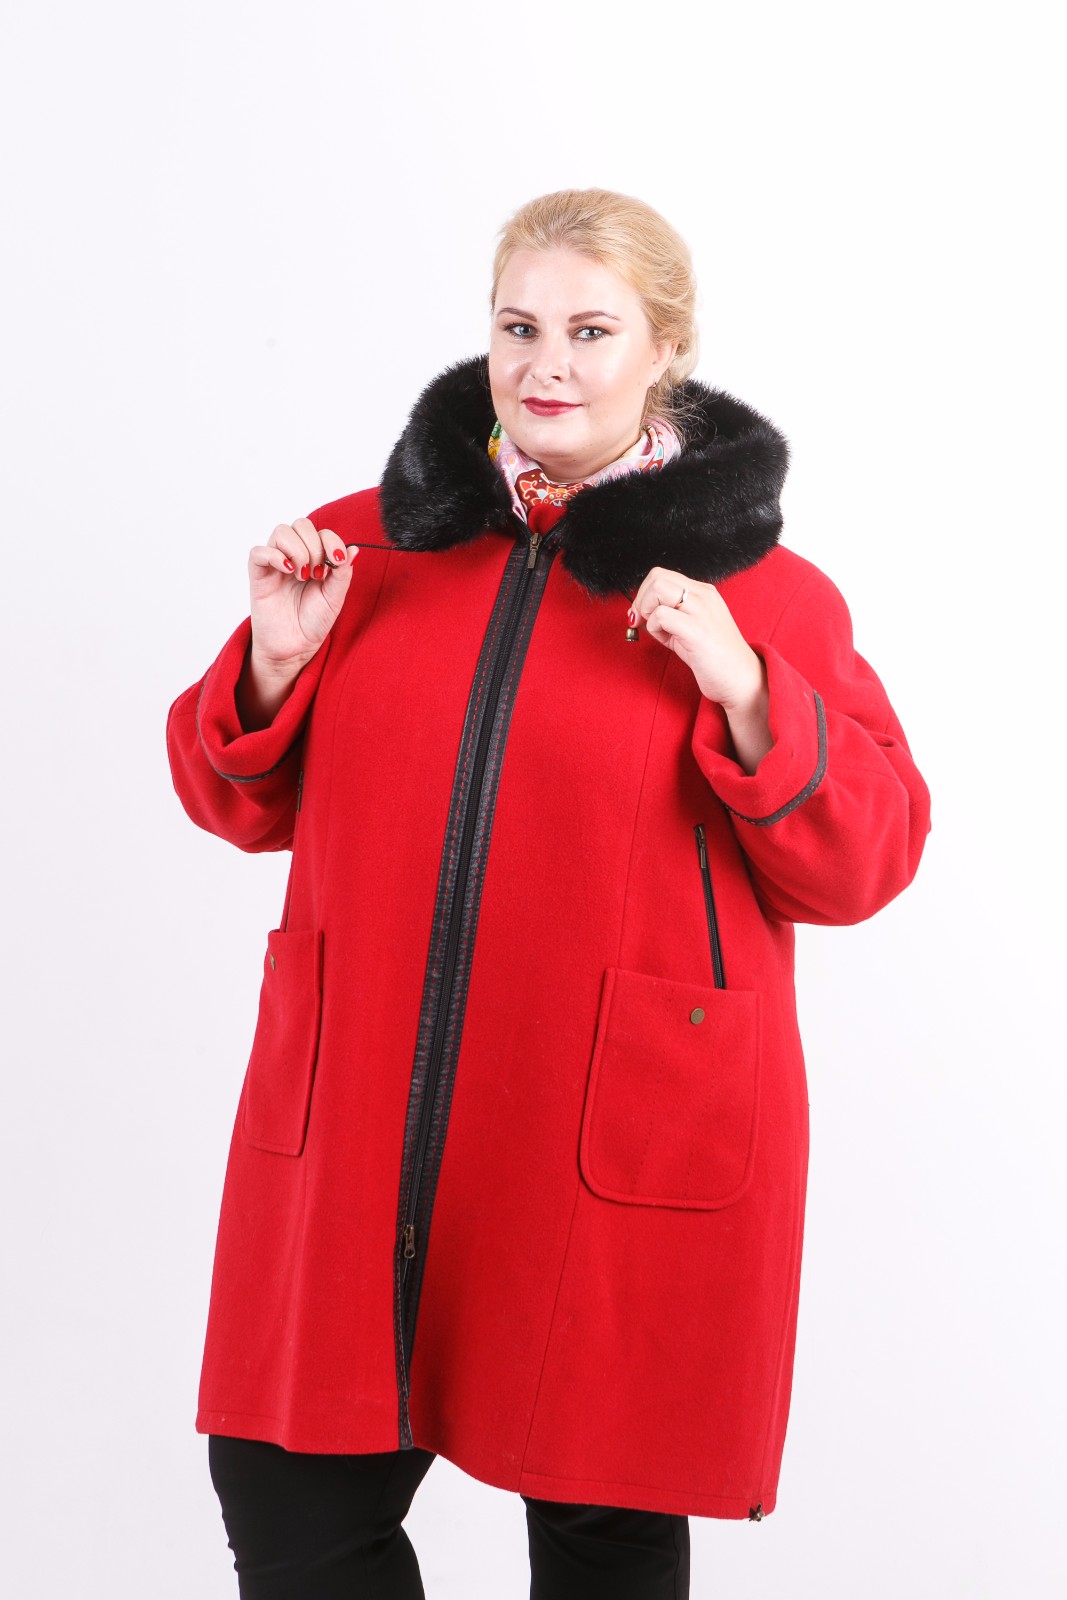 Женский зимнее пальто большого размера купить. Пальто зимнее женское больших размеров. Зимние куртки женские больших размеров. Полупальто женское зимнее больших размеров. Женские пальто большого размера.